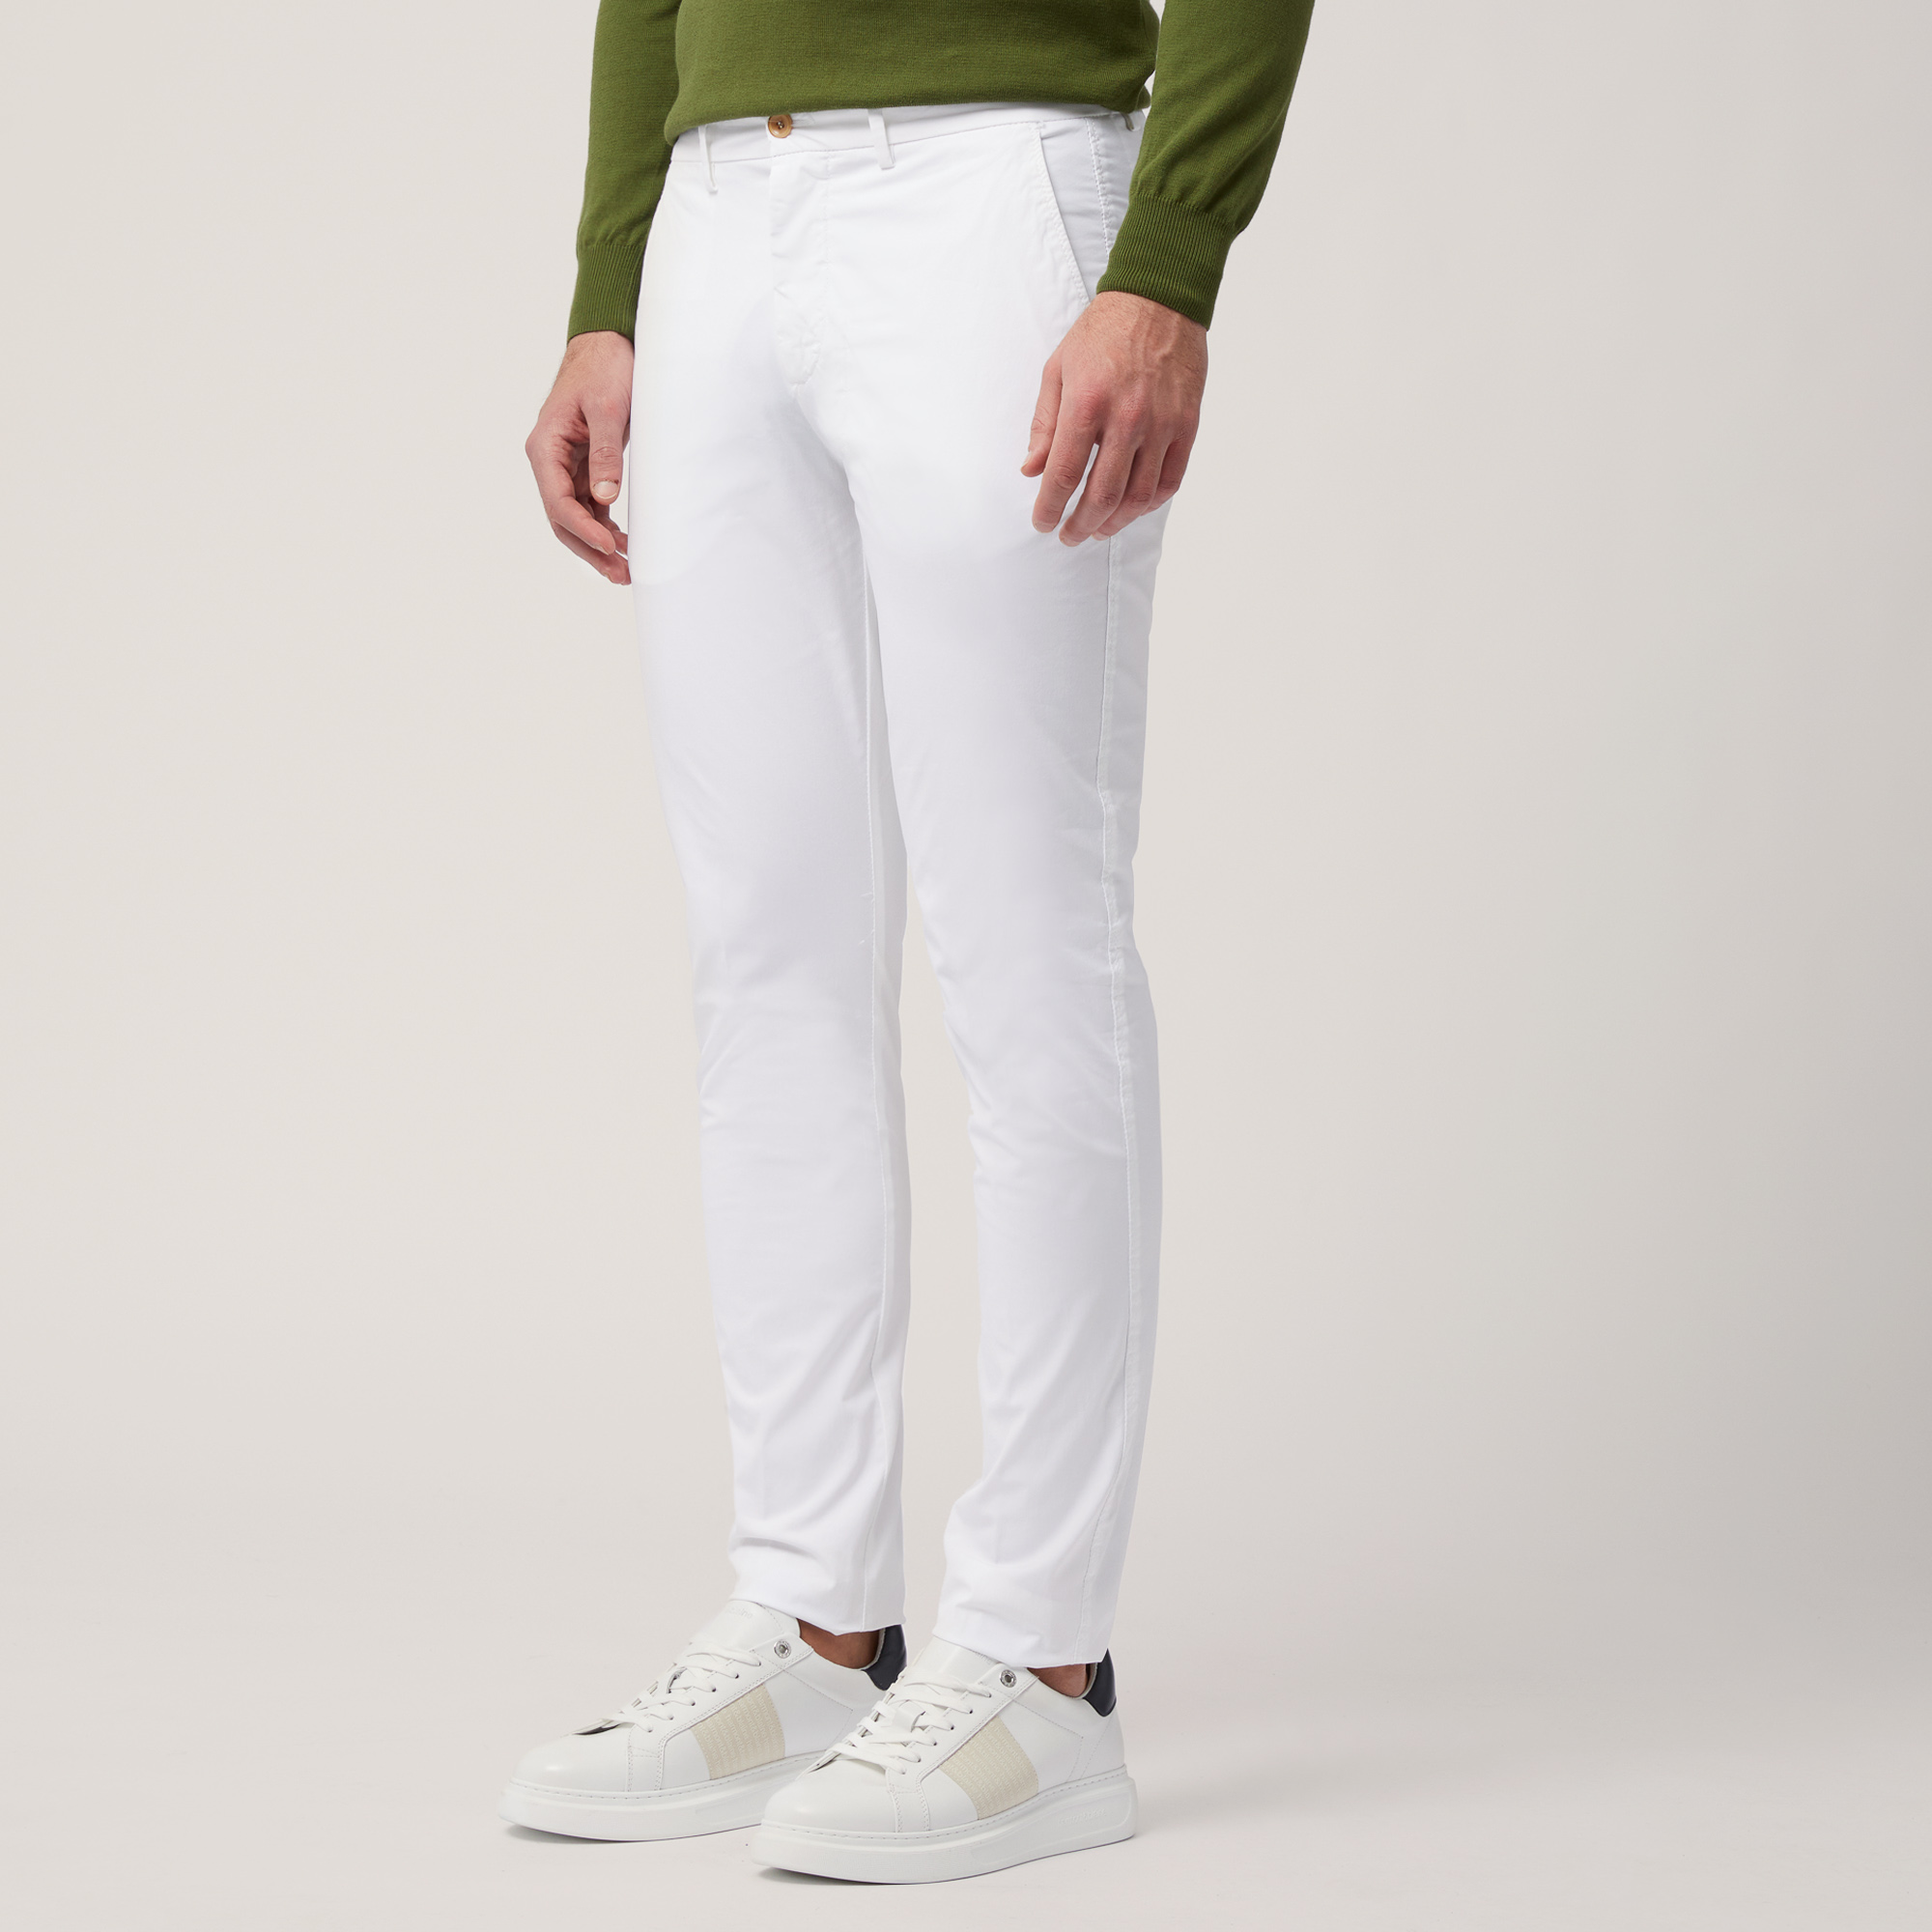 Pantaloni Chino Narrow Fit, Bianco, large